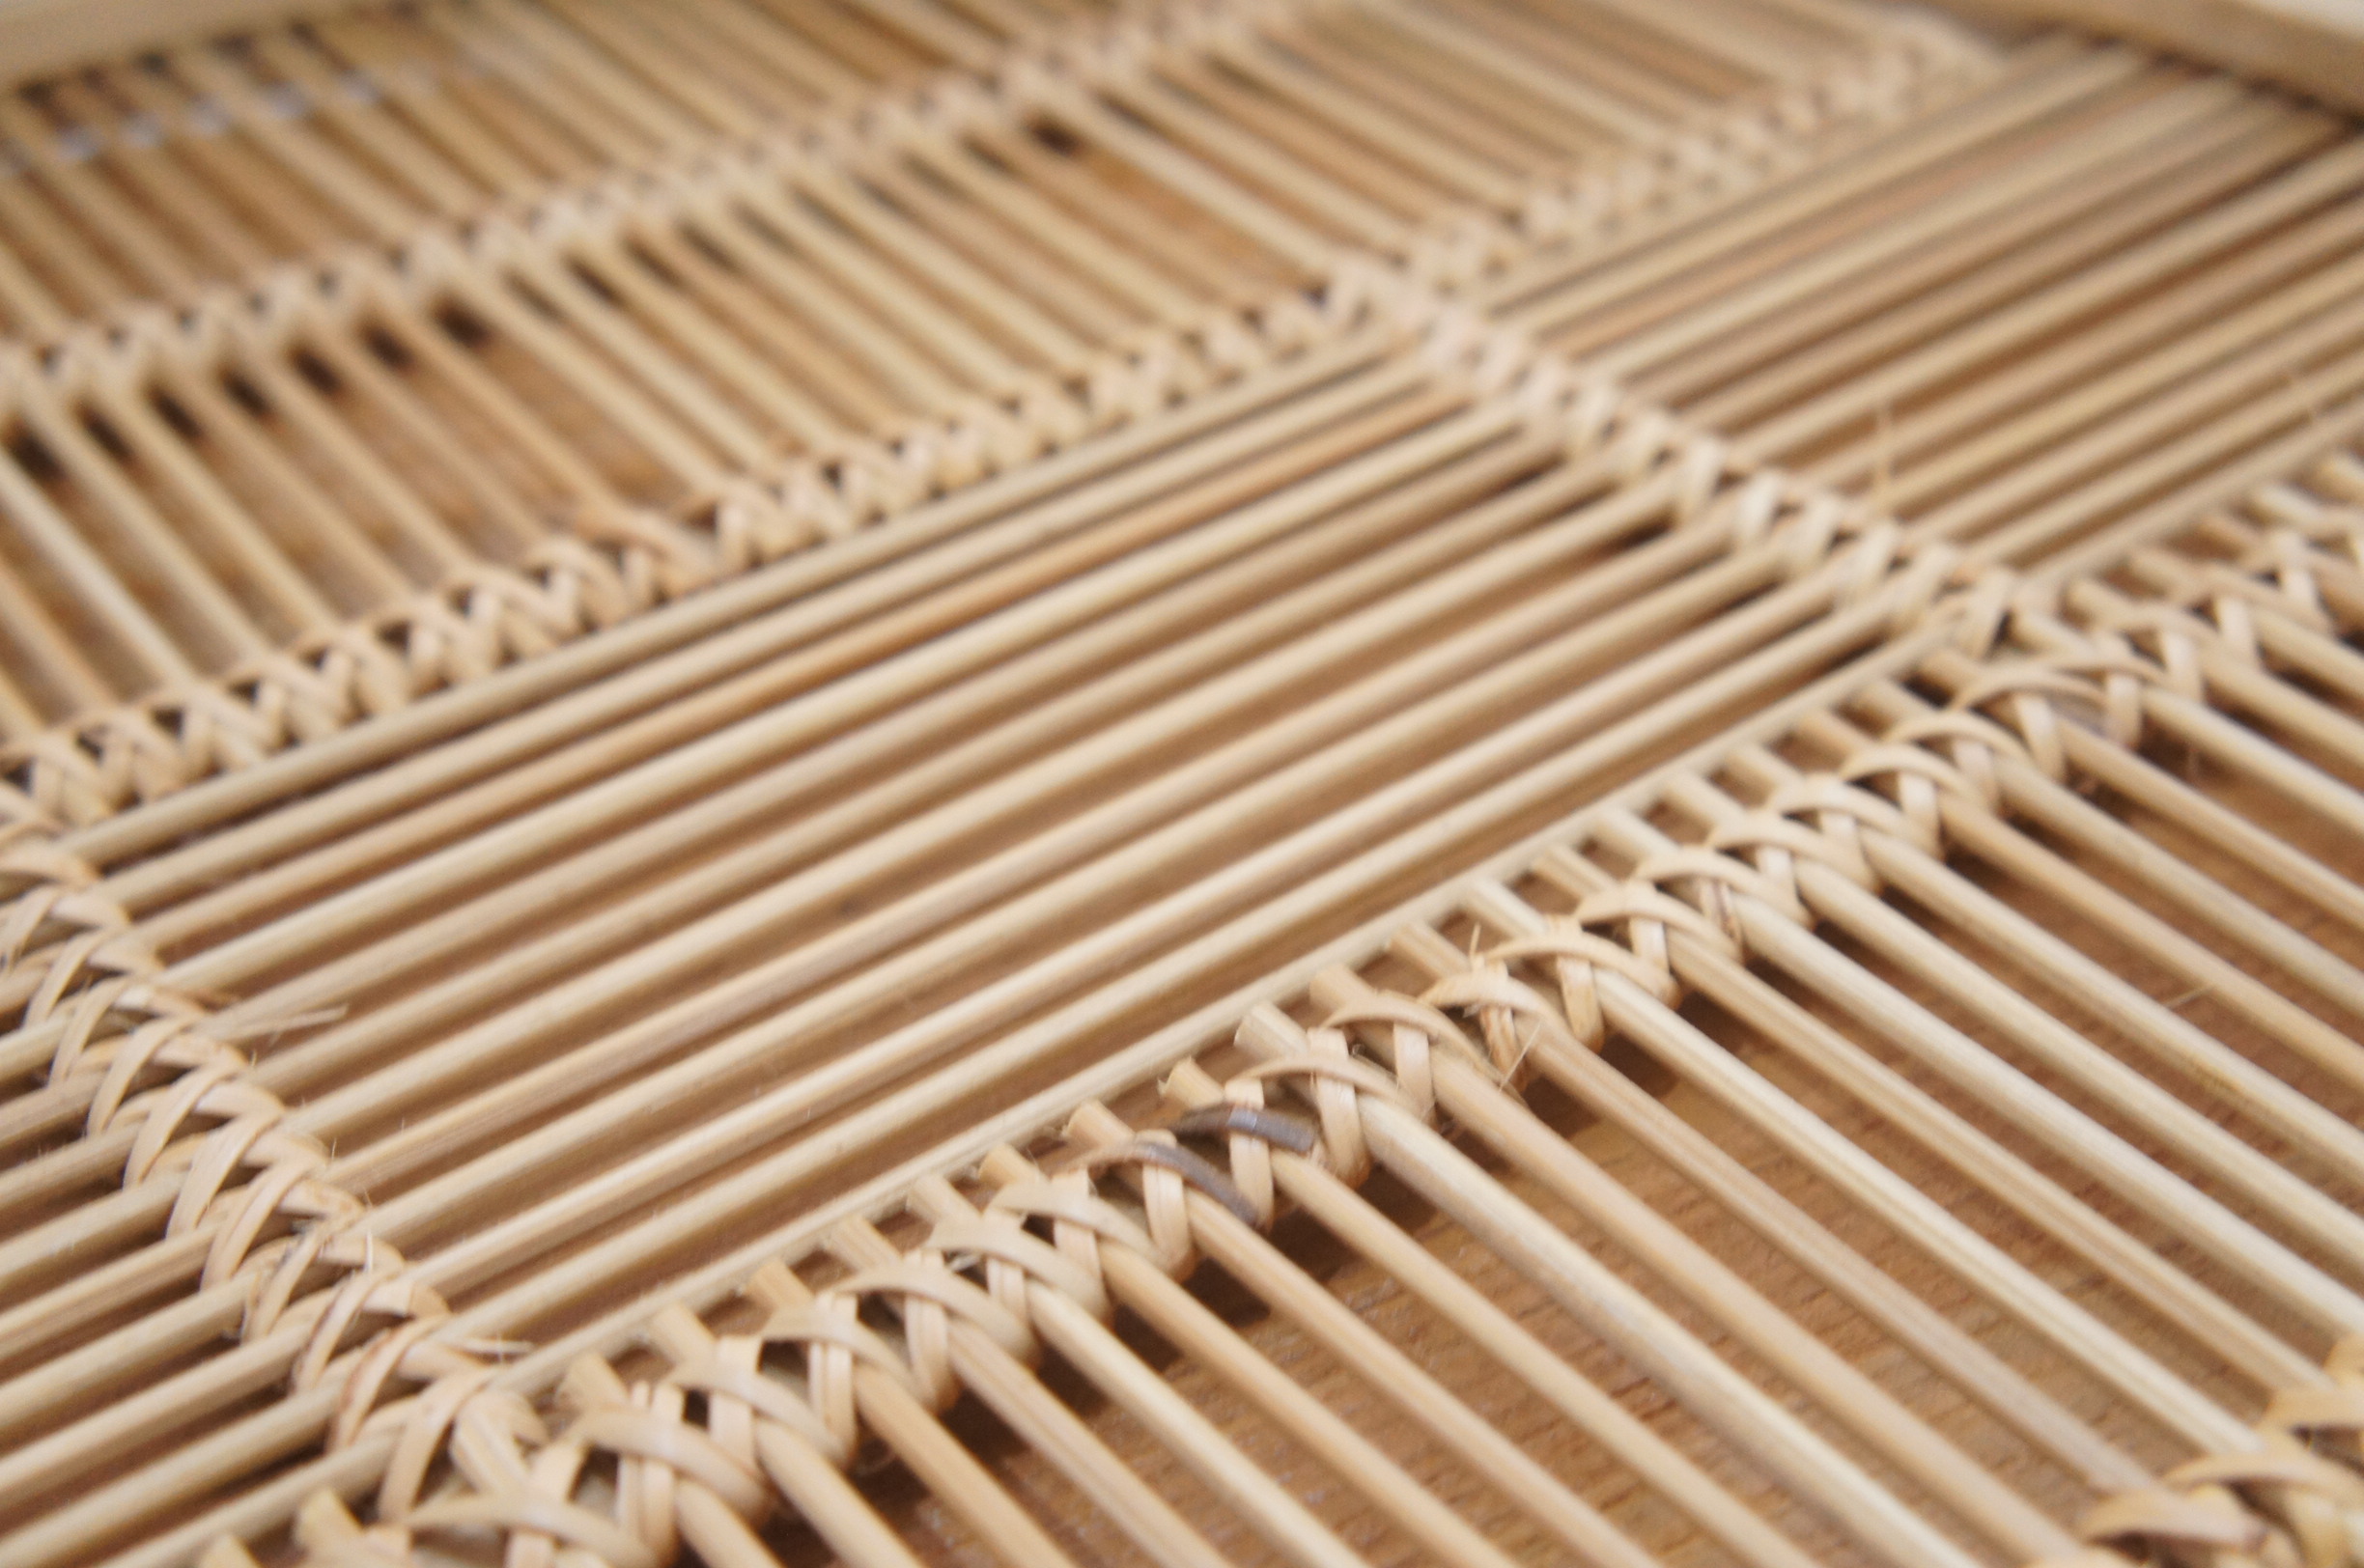 バンブートレイ 丸型トレイ 編み込み 手編み 竹製 竹細工 お盆 40cm